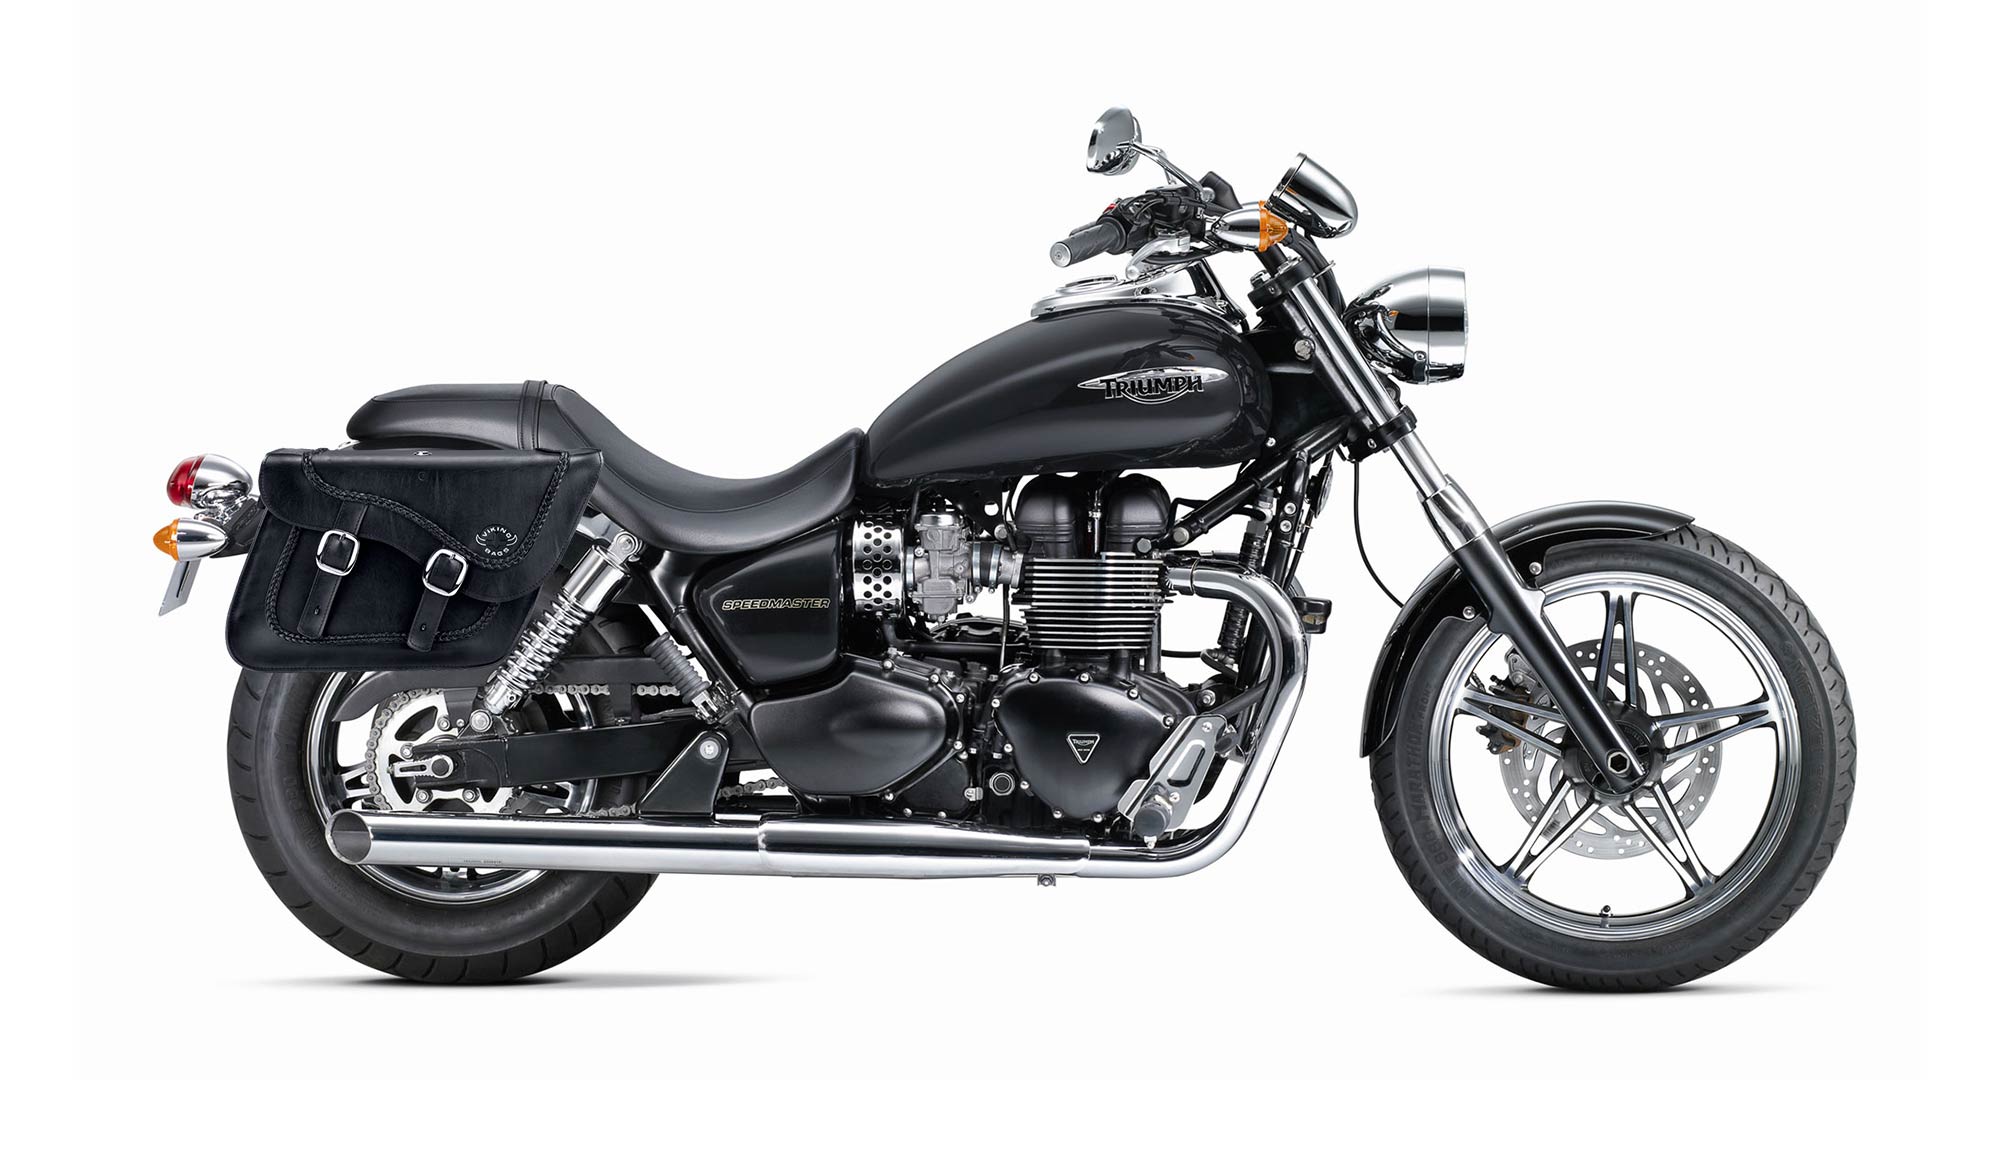 Viking Americano Triumph Speedmaster Braided Large Leather Motorcycle Saddlebags on Bike Photo @expand